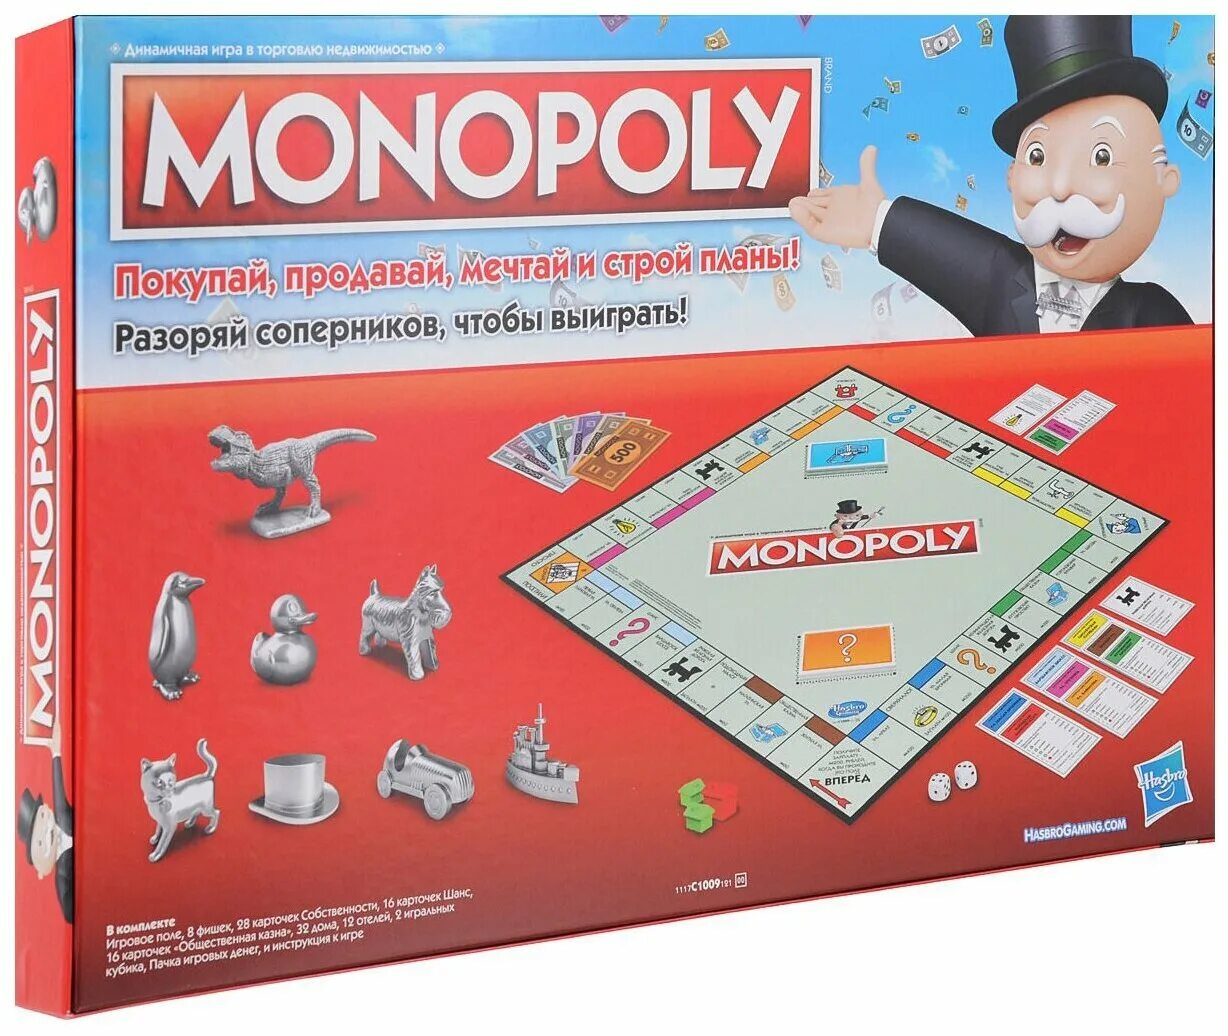 Игра монополия hasbro. Настольная игра Monopoly классическая обновленная c1009. Монополия Monopoly Хасбро. Монополия классика Monopoly c1009. Настольная игра Hasbro Monopoly классическая обновленная.